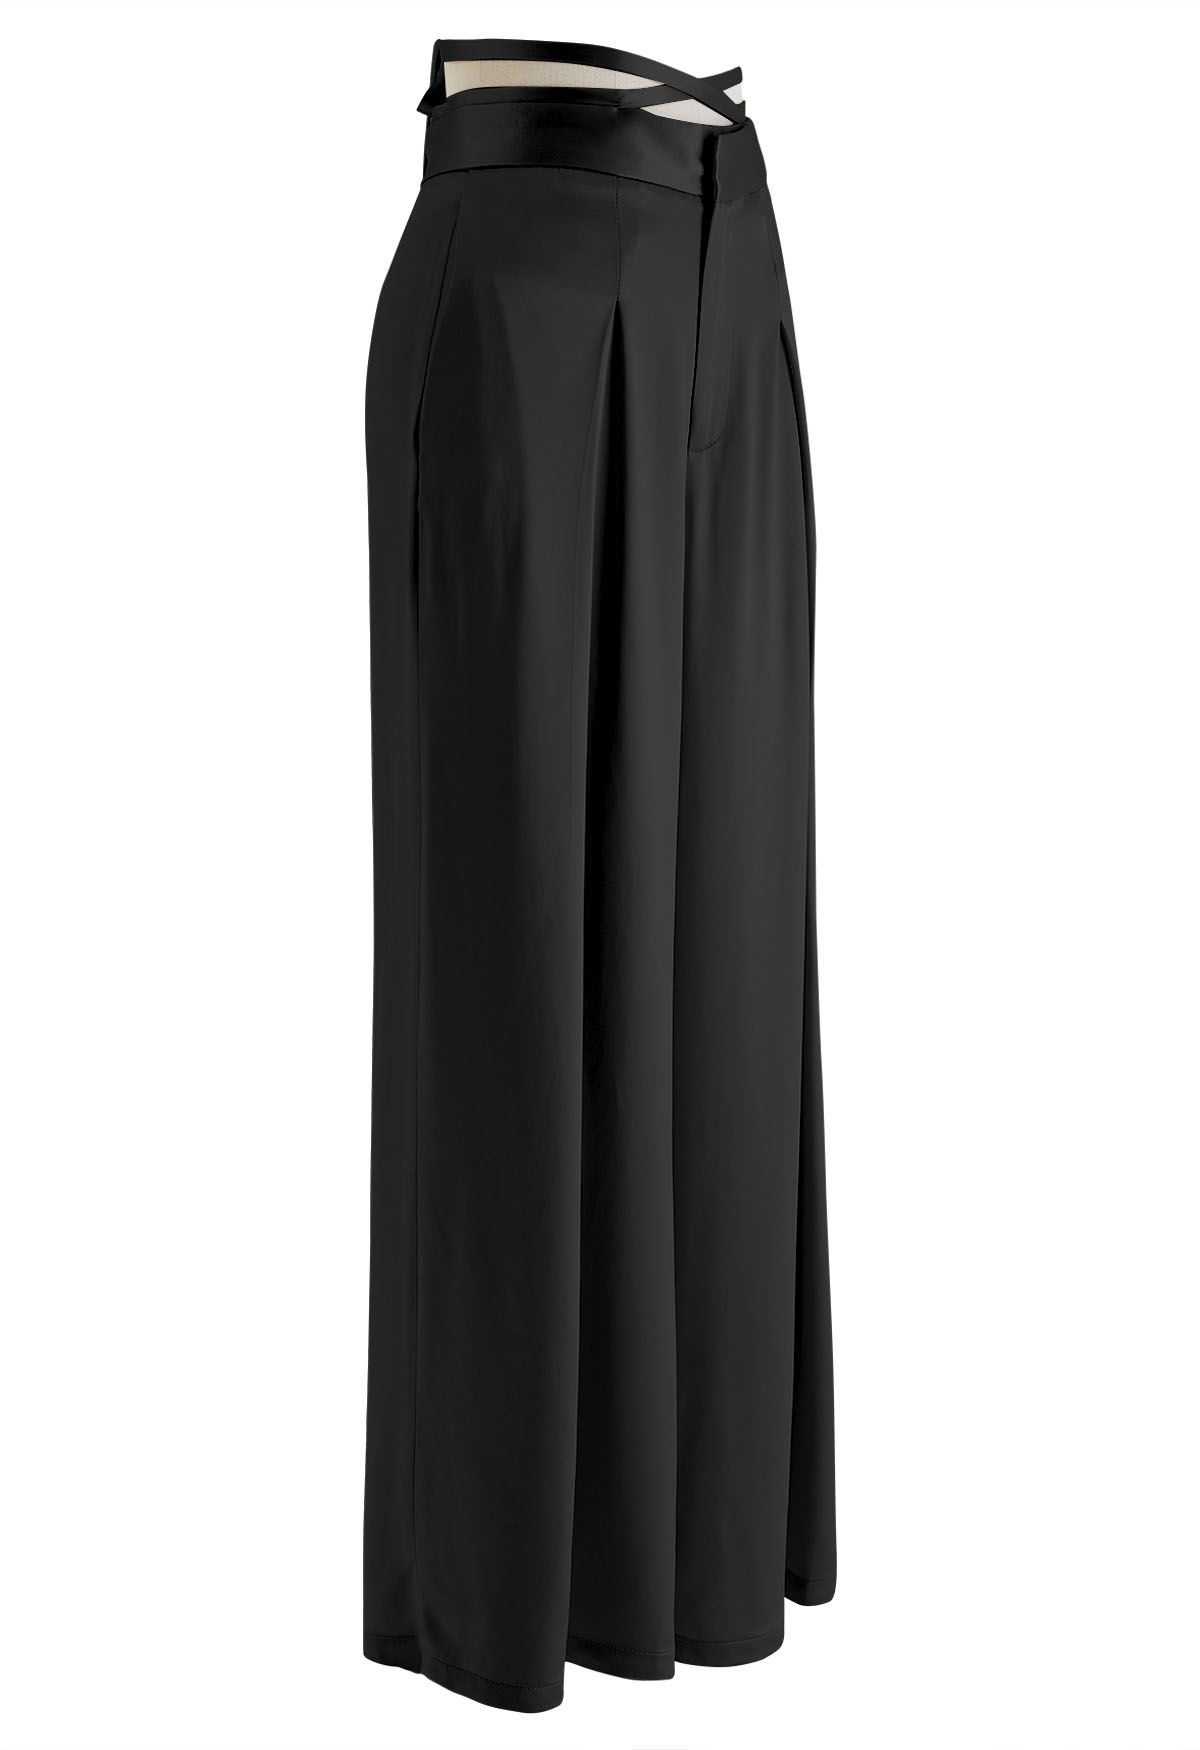 Pantalones de pierna ancha con cintura entrecruzada brillante en negro